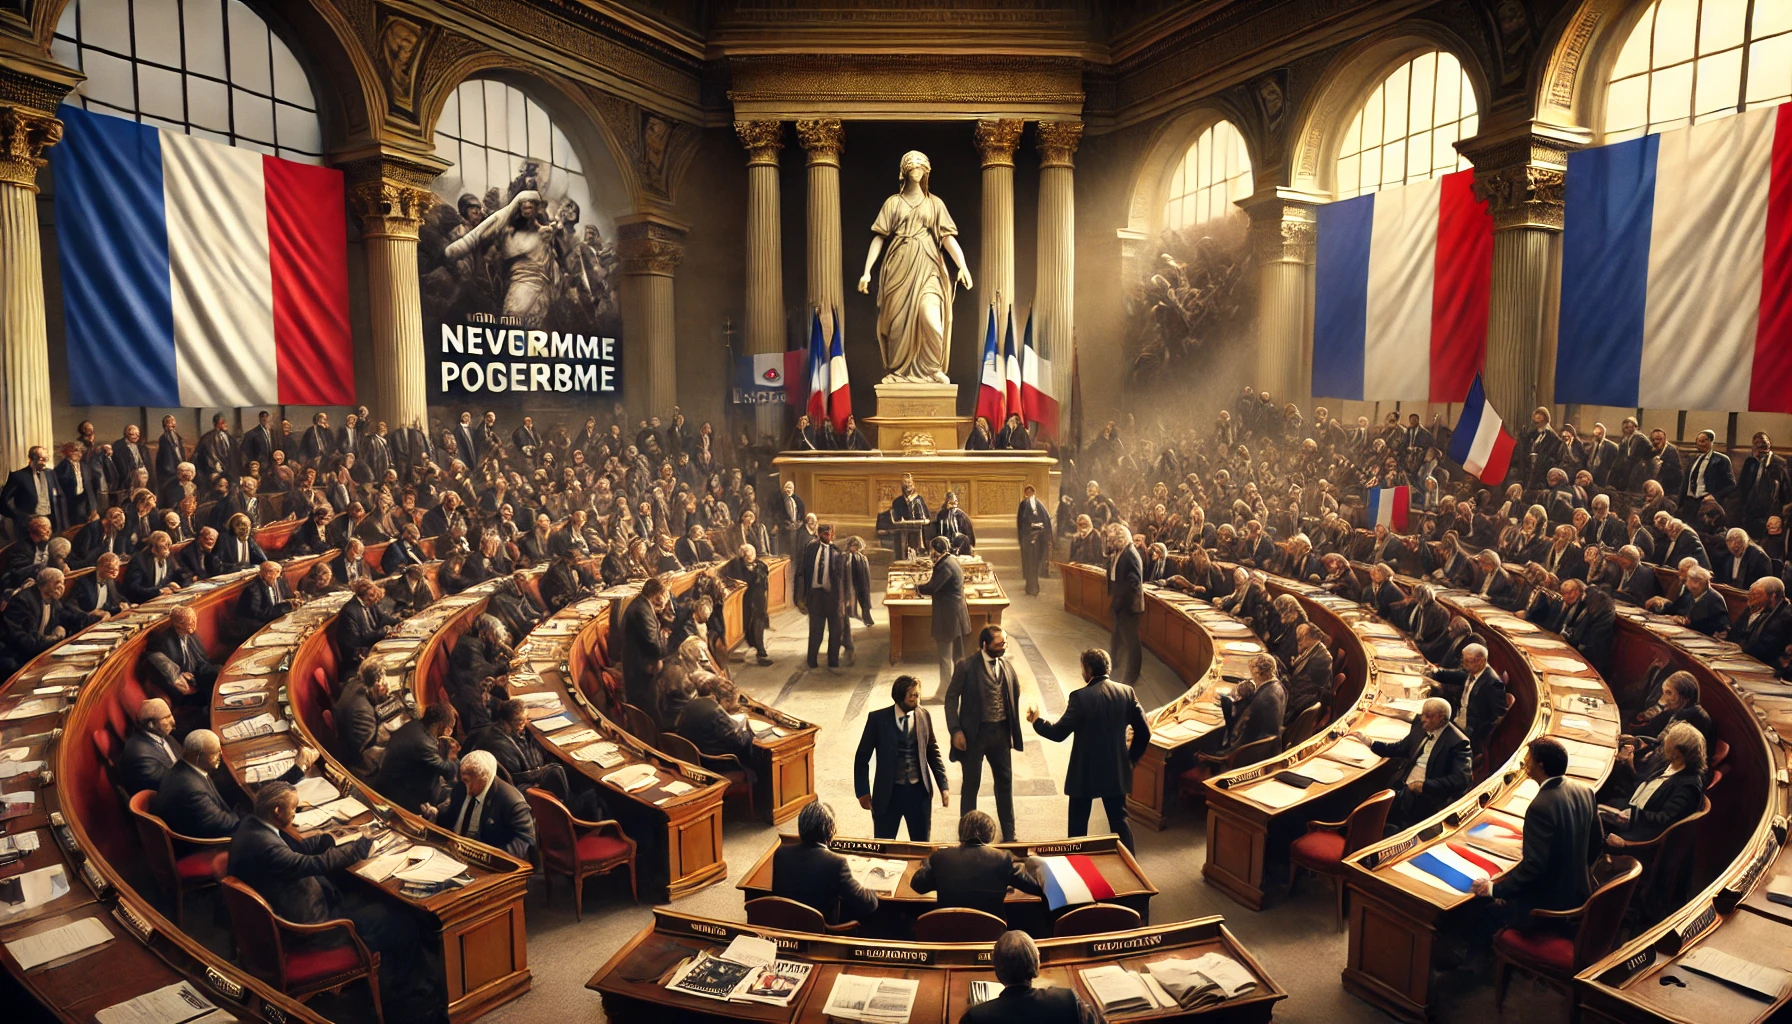  L'image montre l'intérieur de l'Assemblée avec les trois groupes distincts de représentants engagés dans des discussions animées, ainsi que les symboles iconiques de la France en arrière-plan.